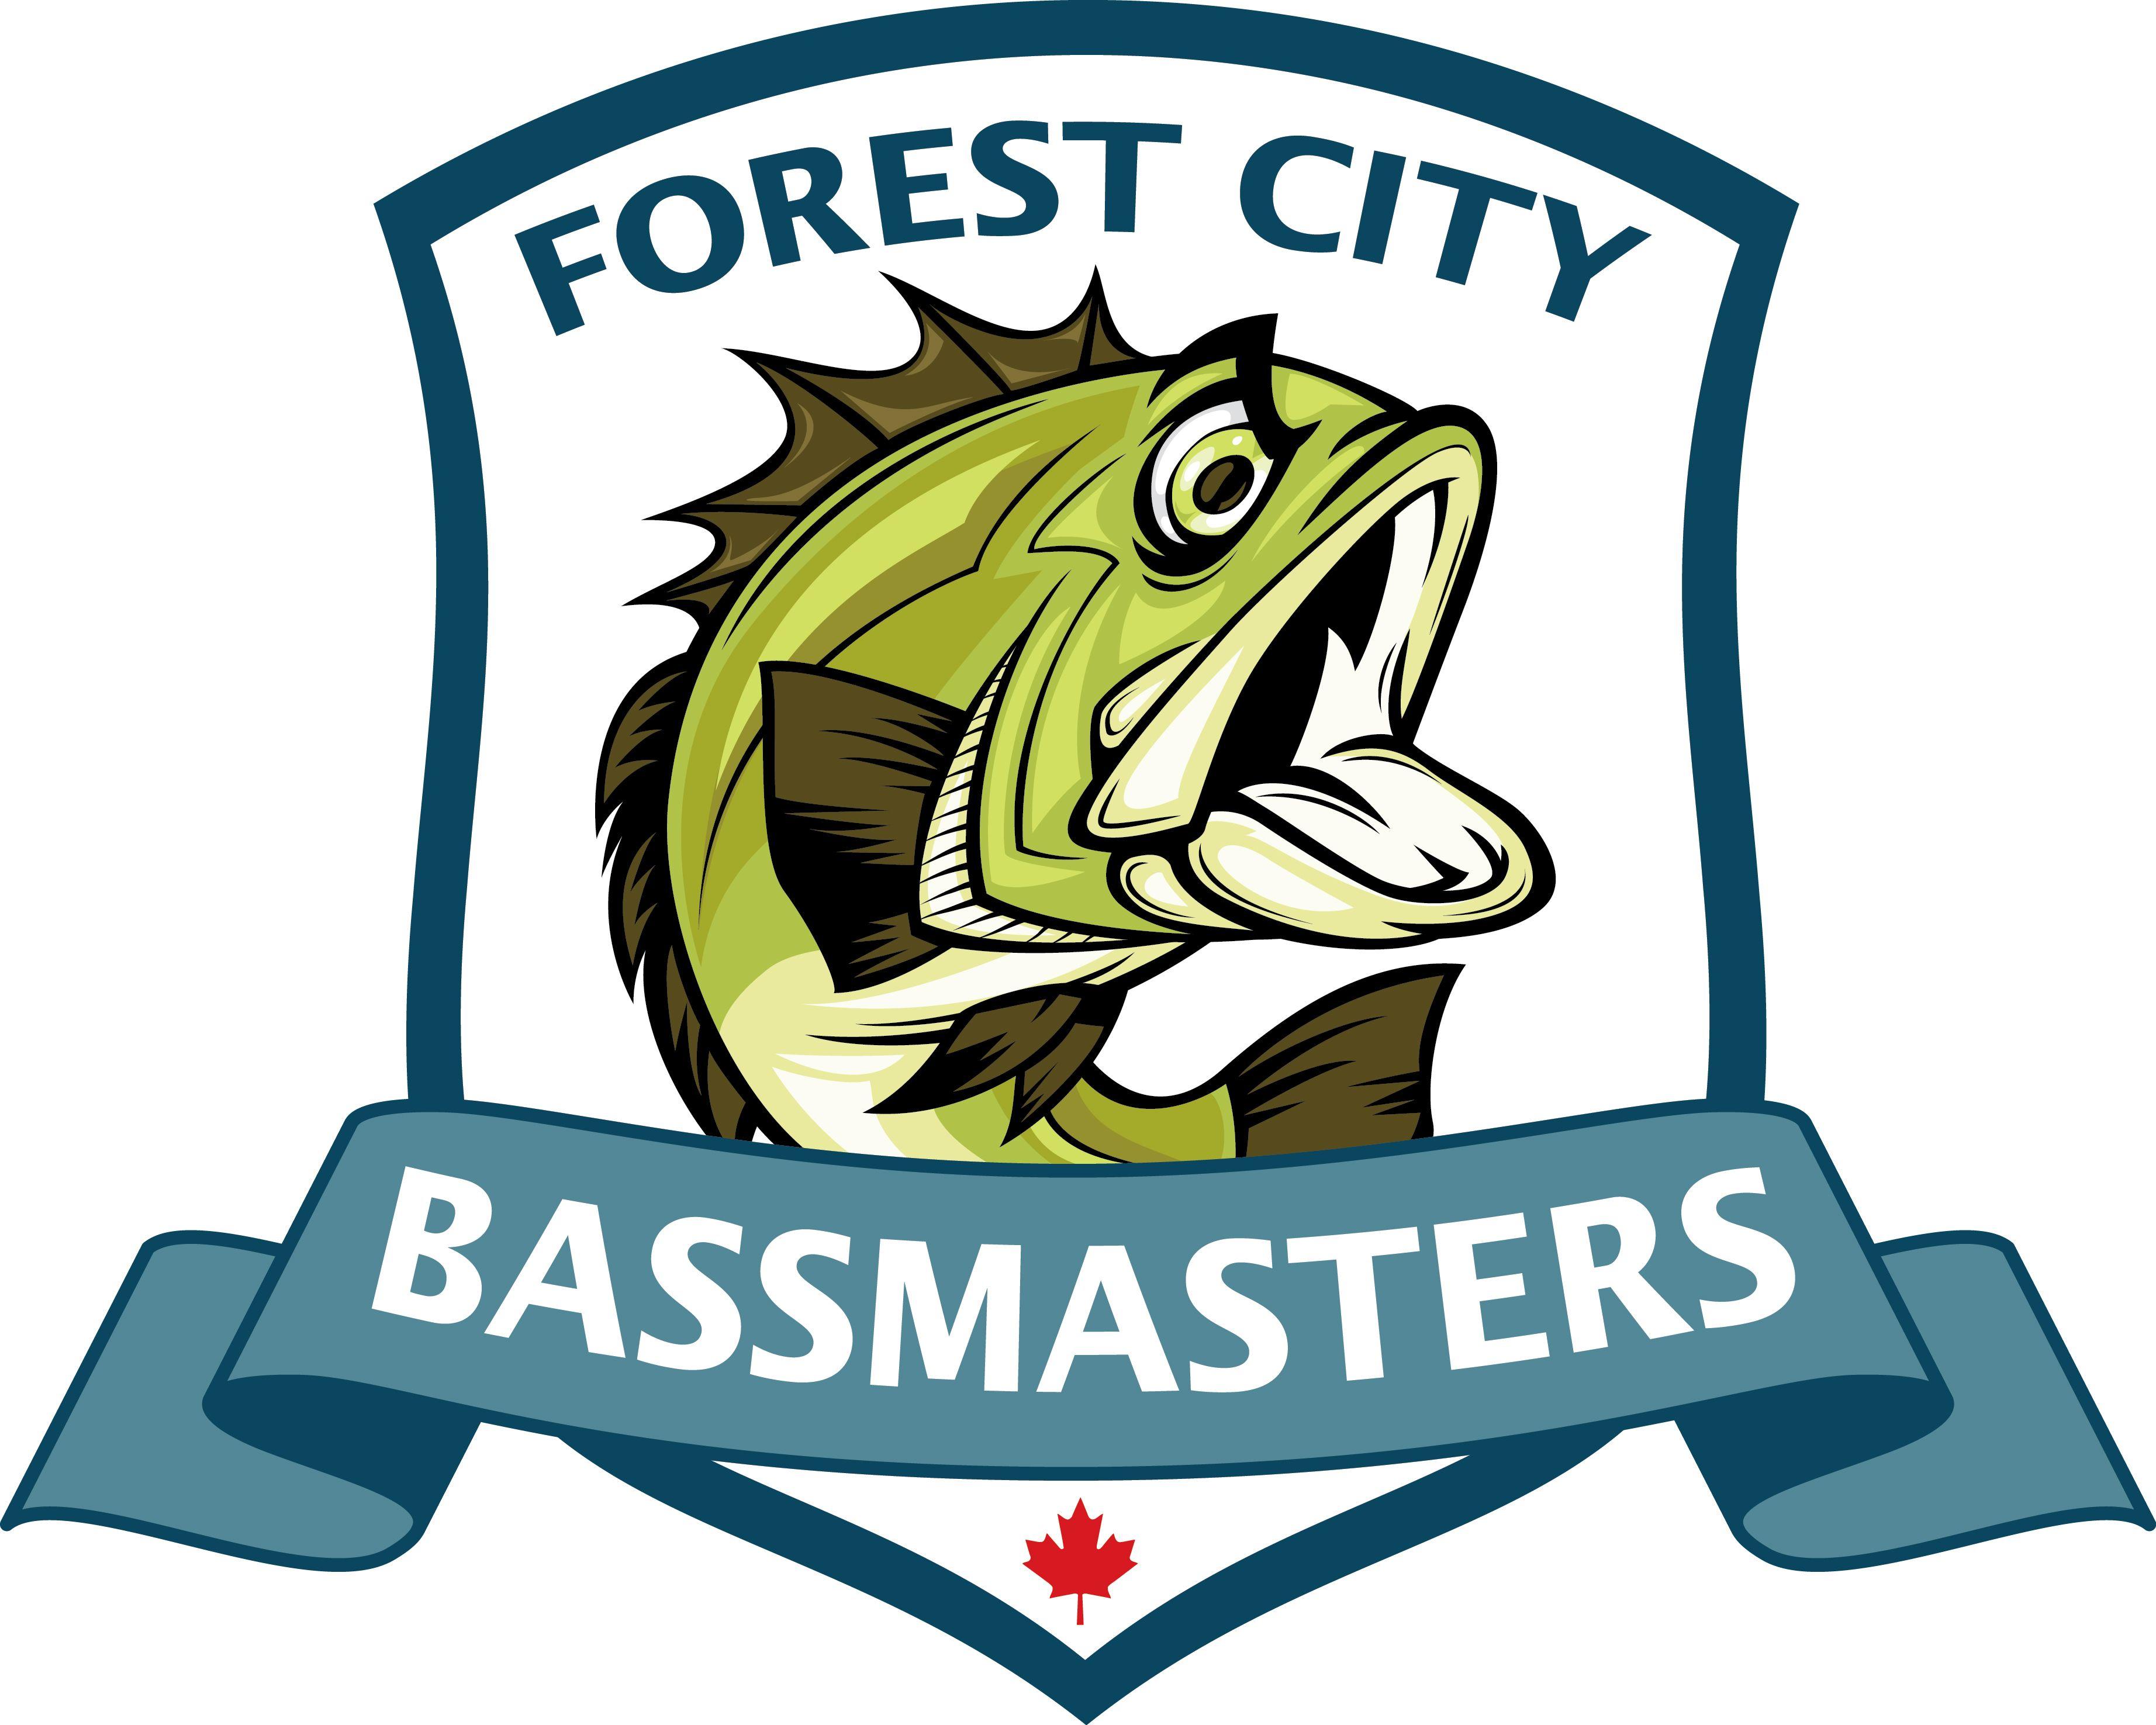 Bassmaster Logo - Bassmaster Logos